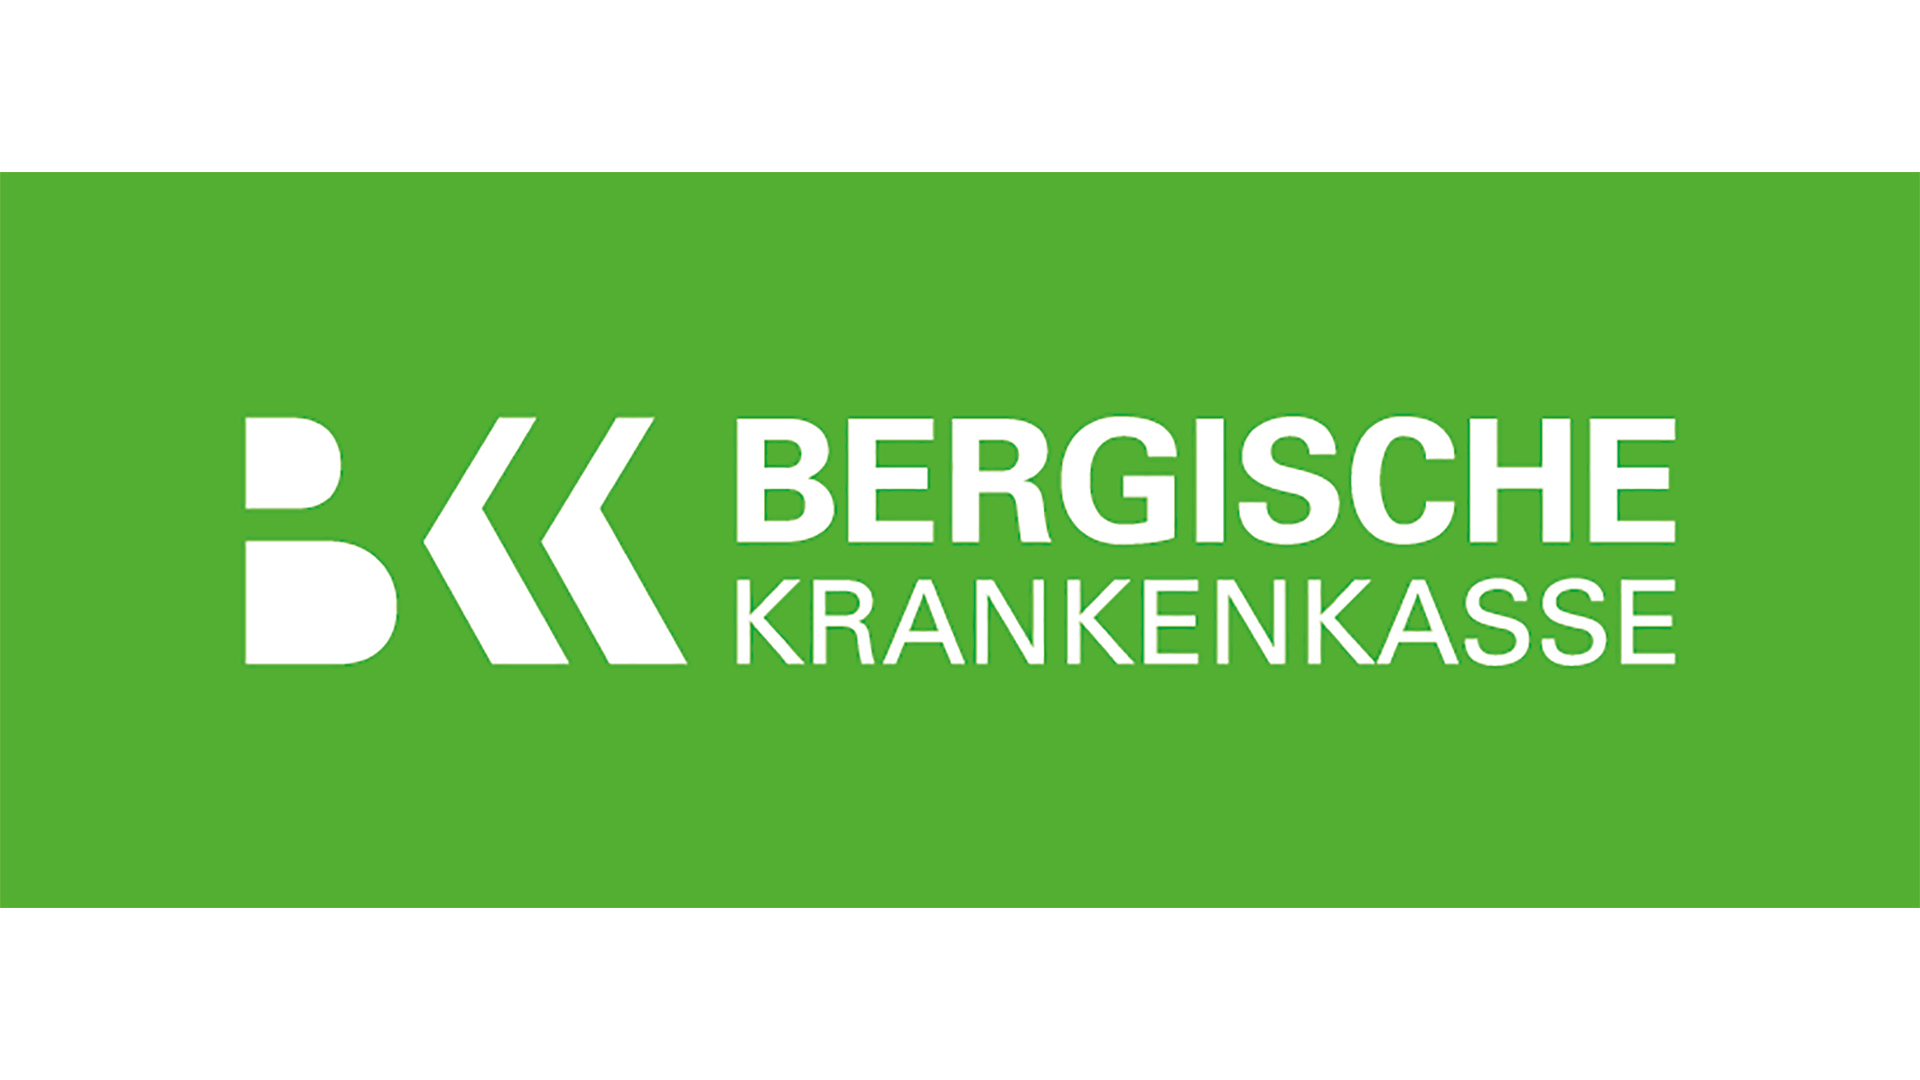 Logo_BKK_Bergische_Krankenkasse_1920x1080.jpg